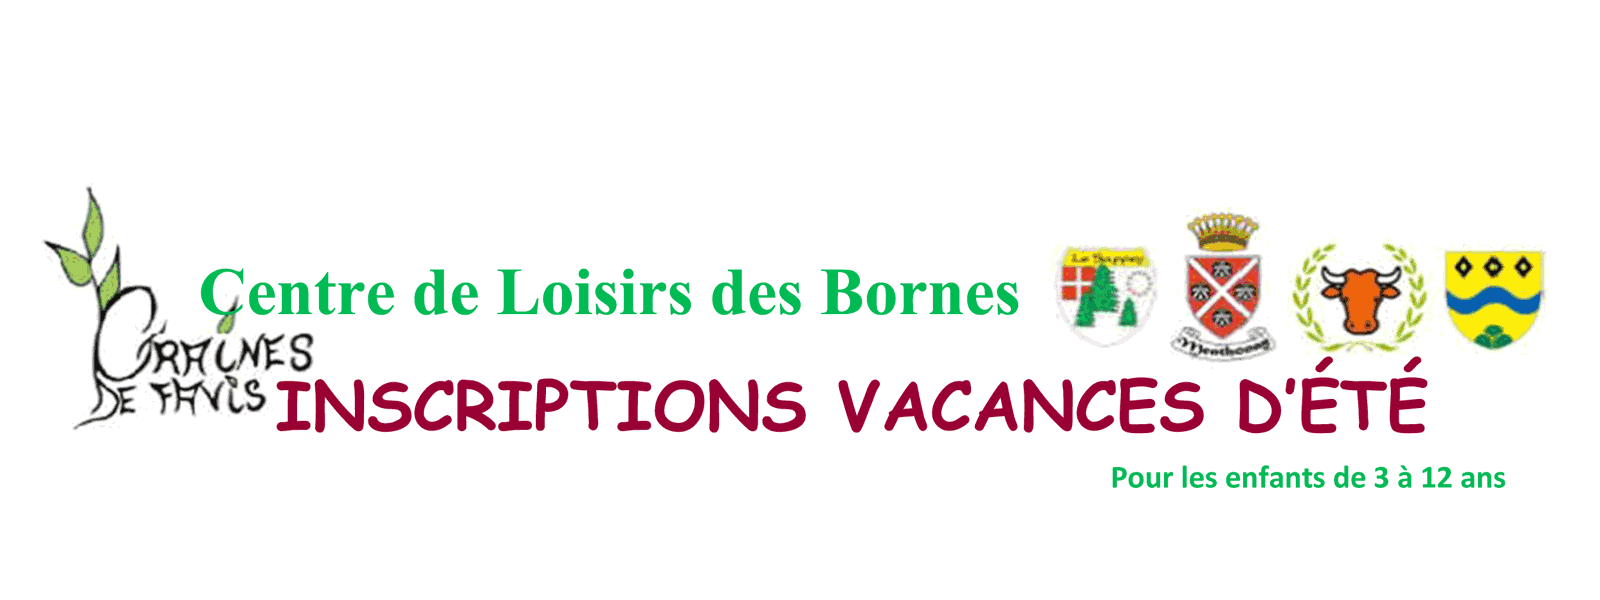 Centre de Loisirs des Bornes - Vacances d'été 2018